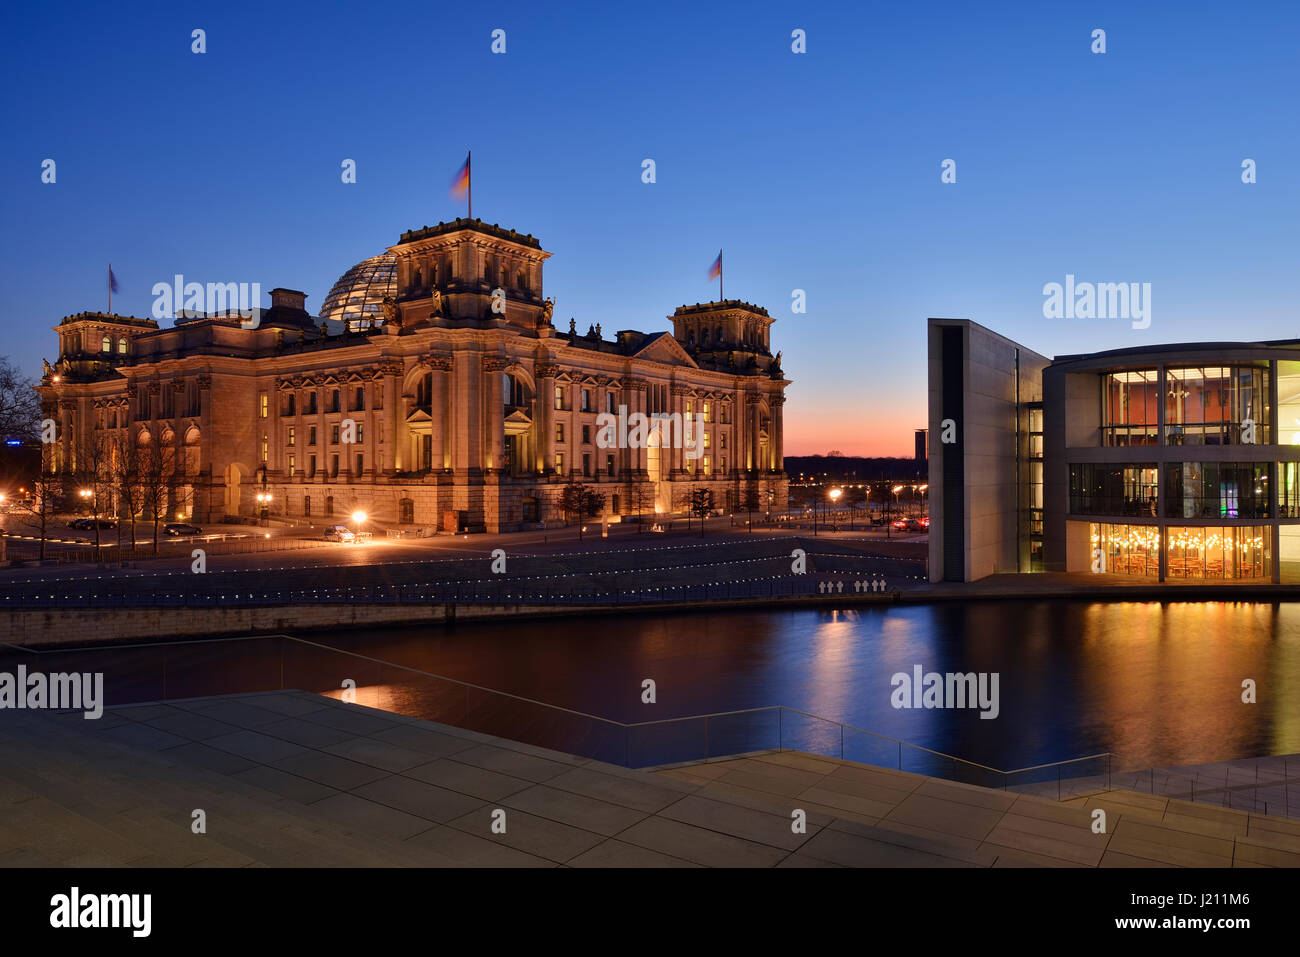 Gli edifici del governo il palazzo del Reichstag e la Paul-Löbe-Haus al quartiere governativo (Bundestag) accesa al crepuscolo , il fiume Sprea, nel centro di Berlino. Reichst Foto Stock